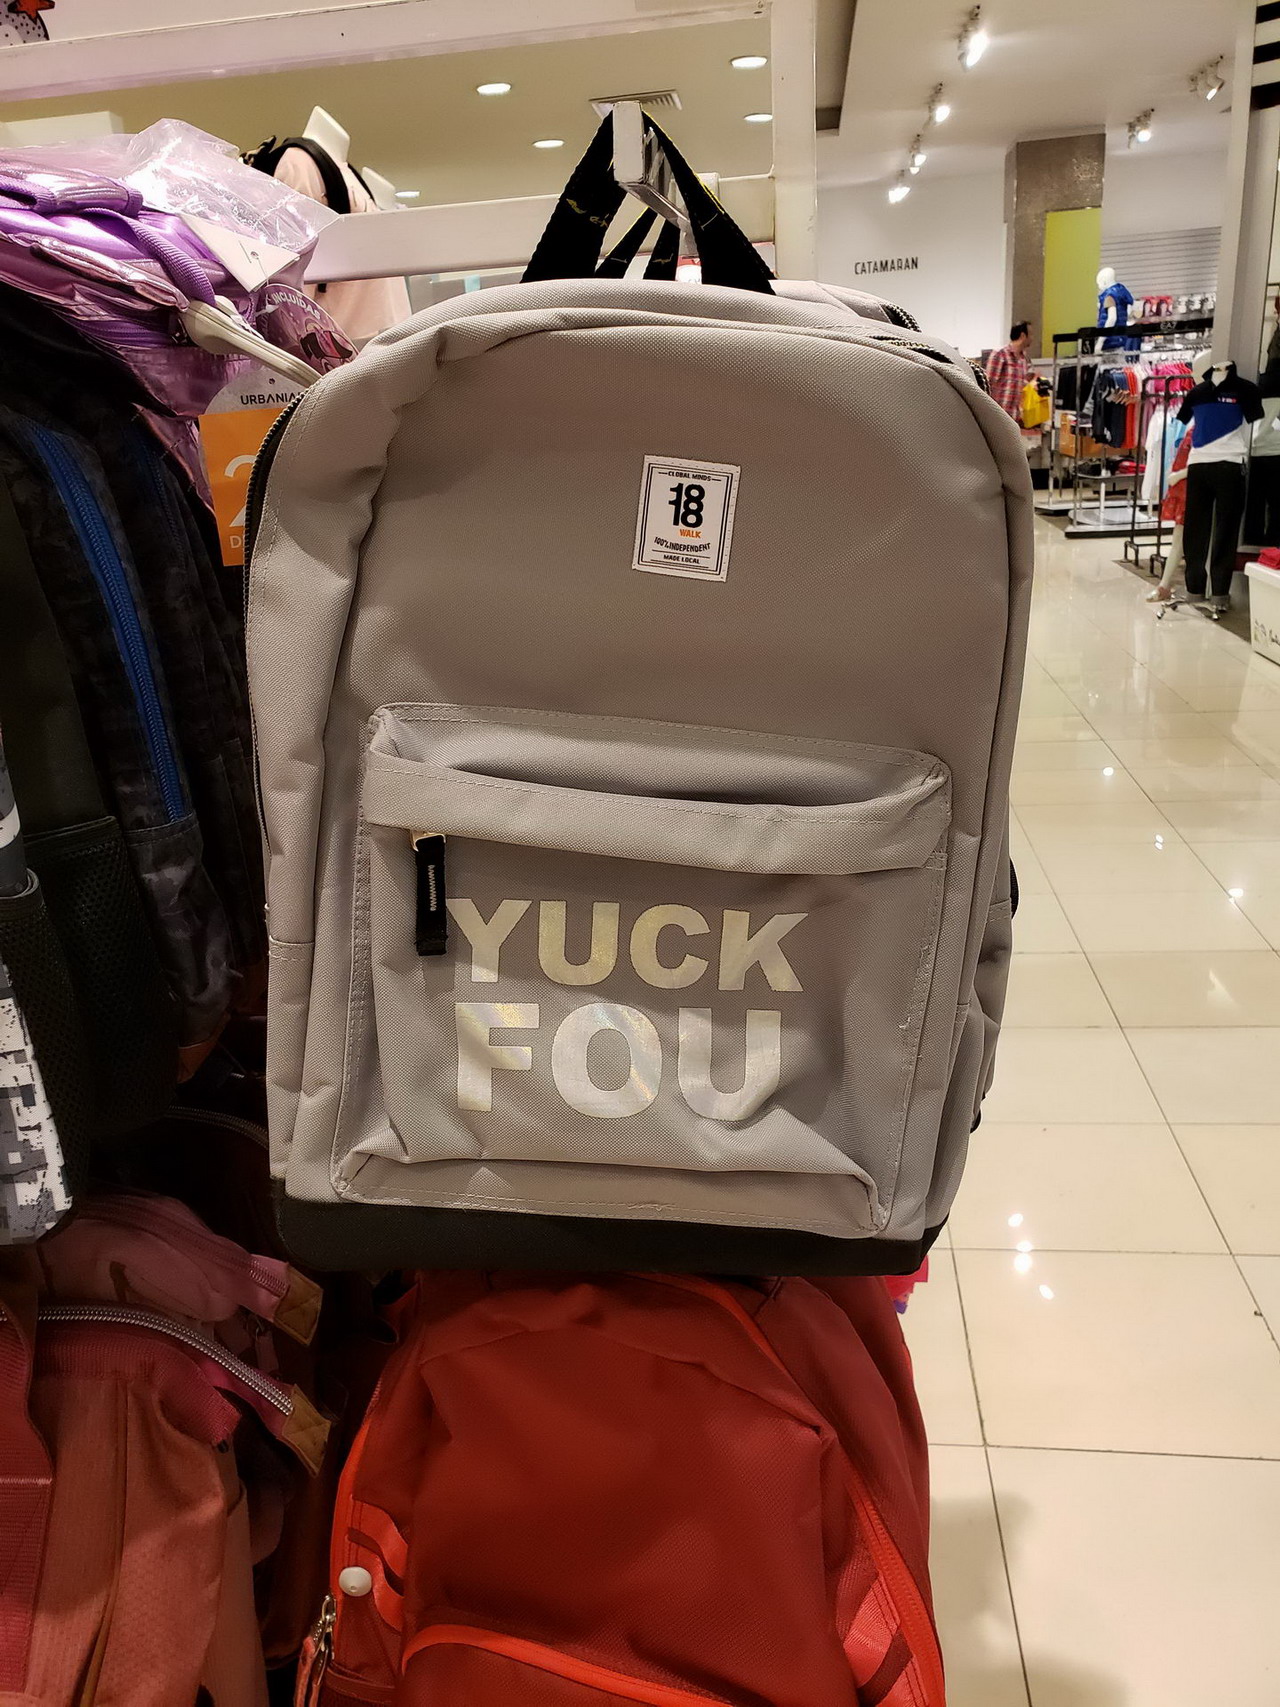 bag - Yuck Fou